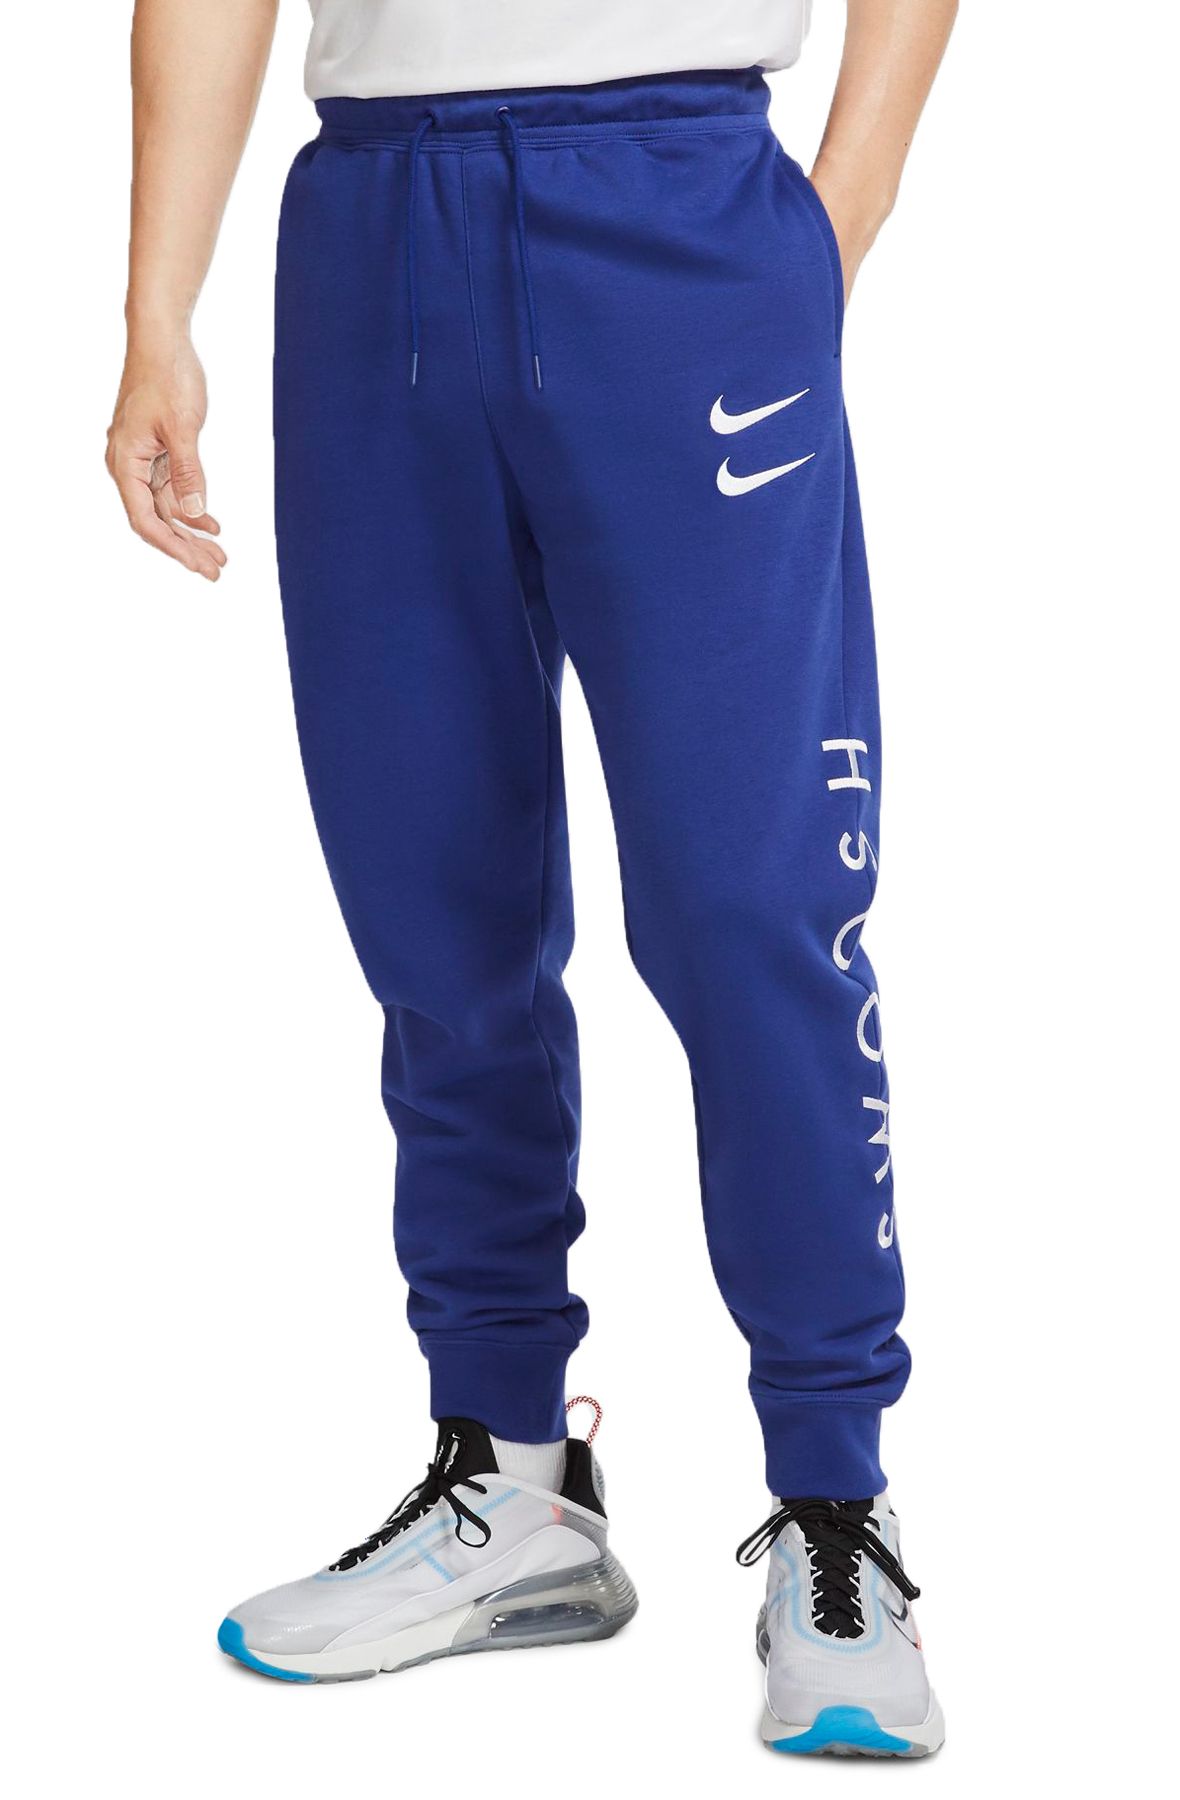 Nike Dri-FIT ADV AeroSwift Pants 'Blue' DM4615-455 - KICKS CREW